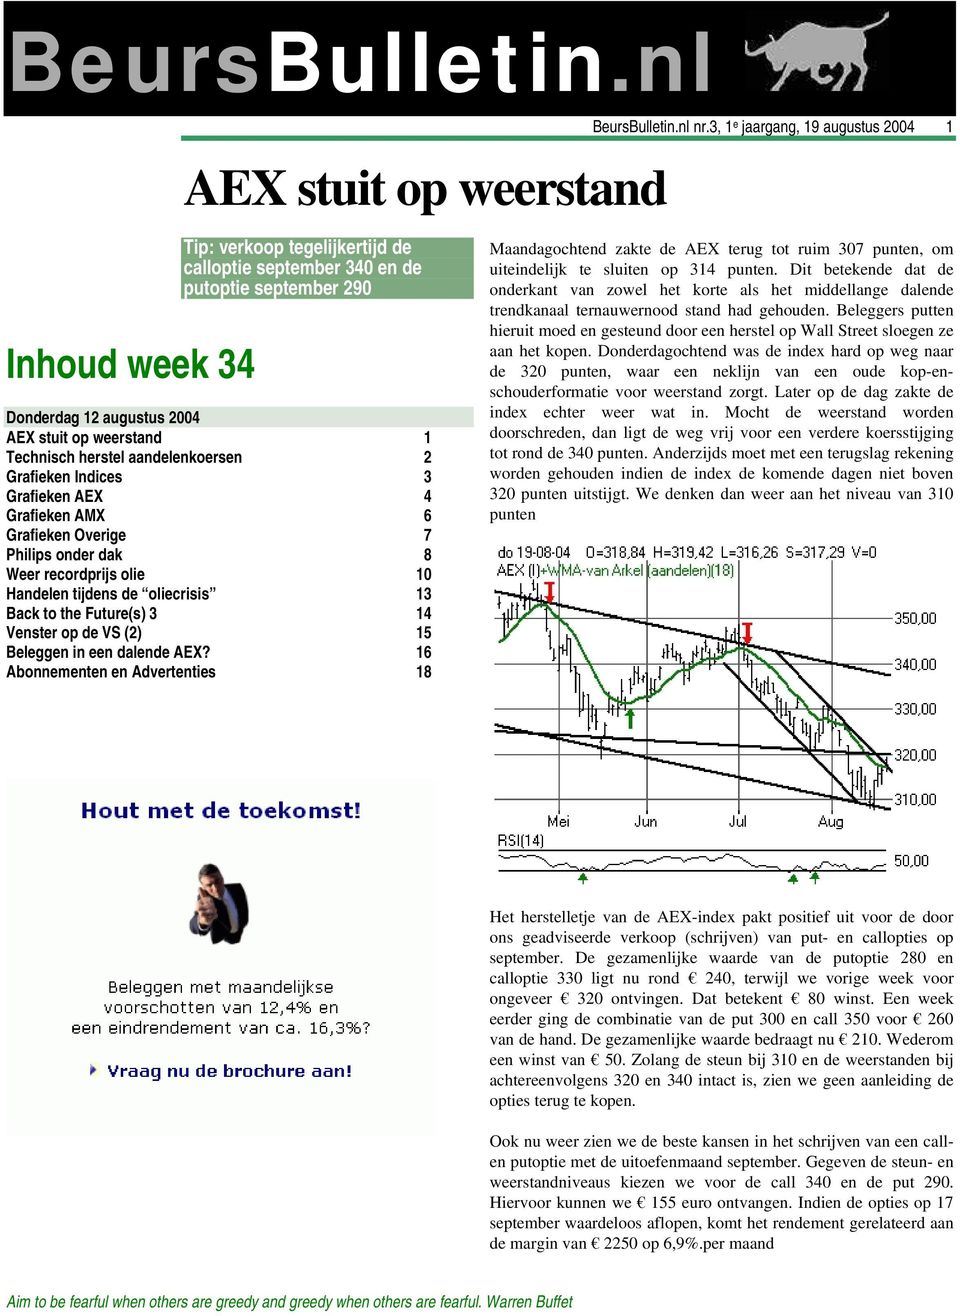 aandelenkoersen 2 Grafieken Indices 3 Grafieken AEX 4 Grafieken AMX 6 Grafieken Overige 7 Philips onder dak 8 Weer recordprijs olie 10 Handelen tijdens de oliecrisis 13 Back to the Future(s) 3 14